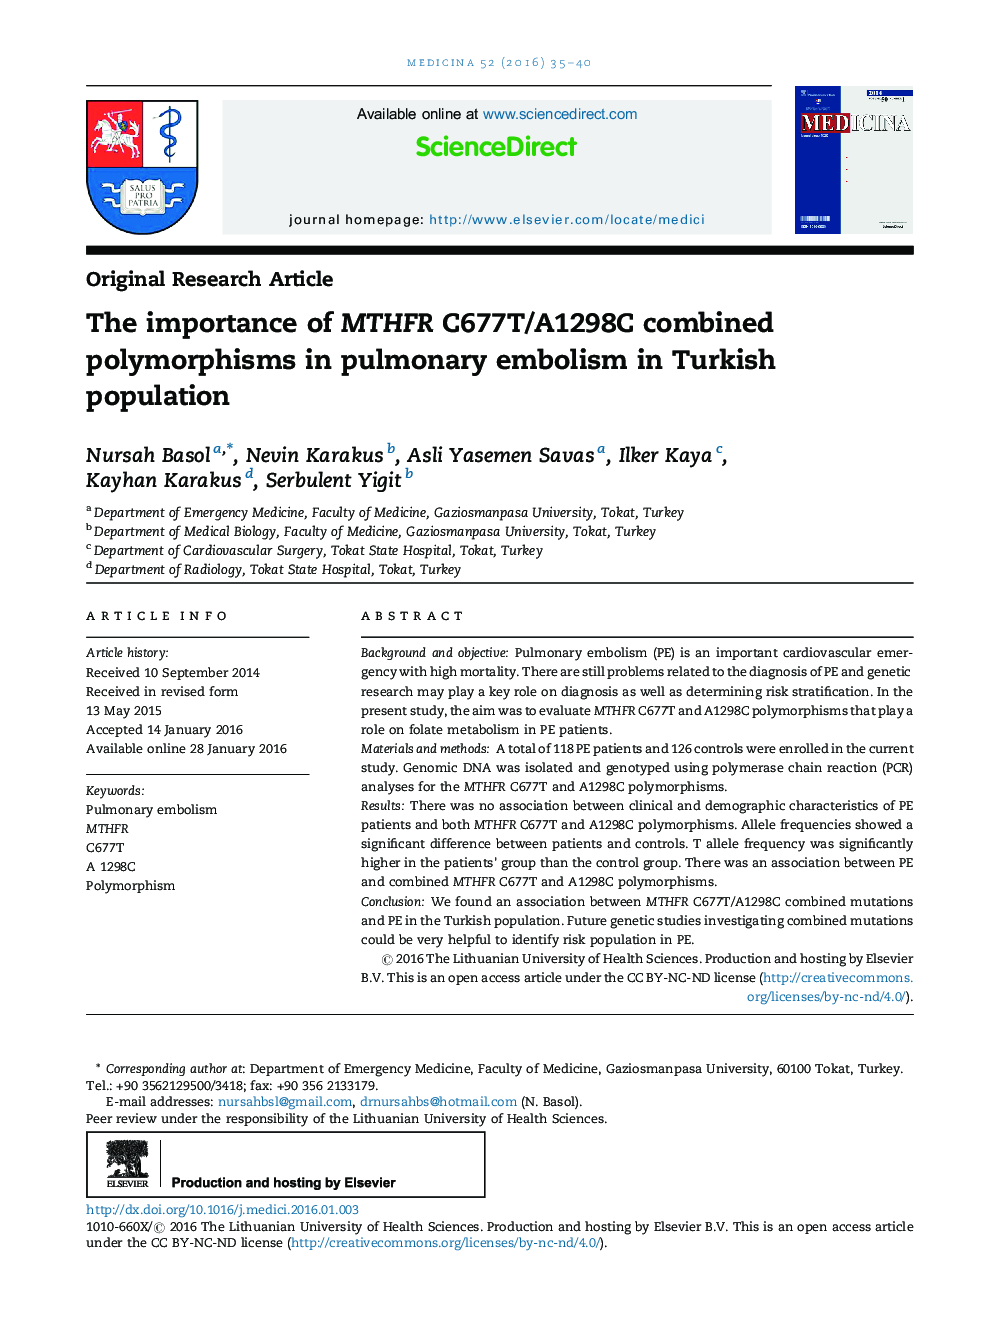 اهمیت پلی مورفیسم ترکیبی MTHFR C677T/A1298C در آمبولی ریوی در جمعیت ترکیه